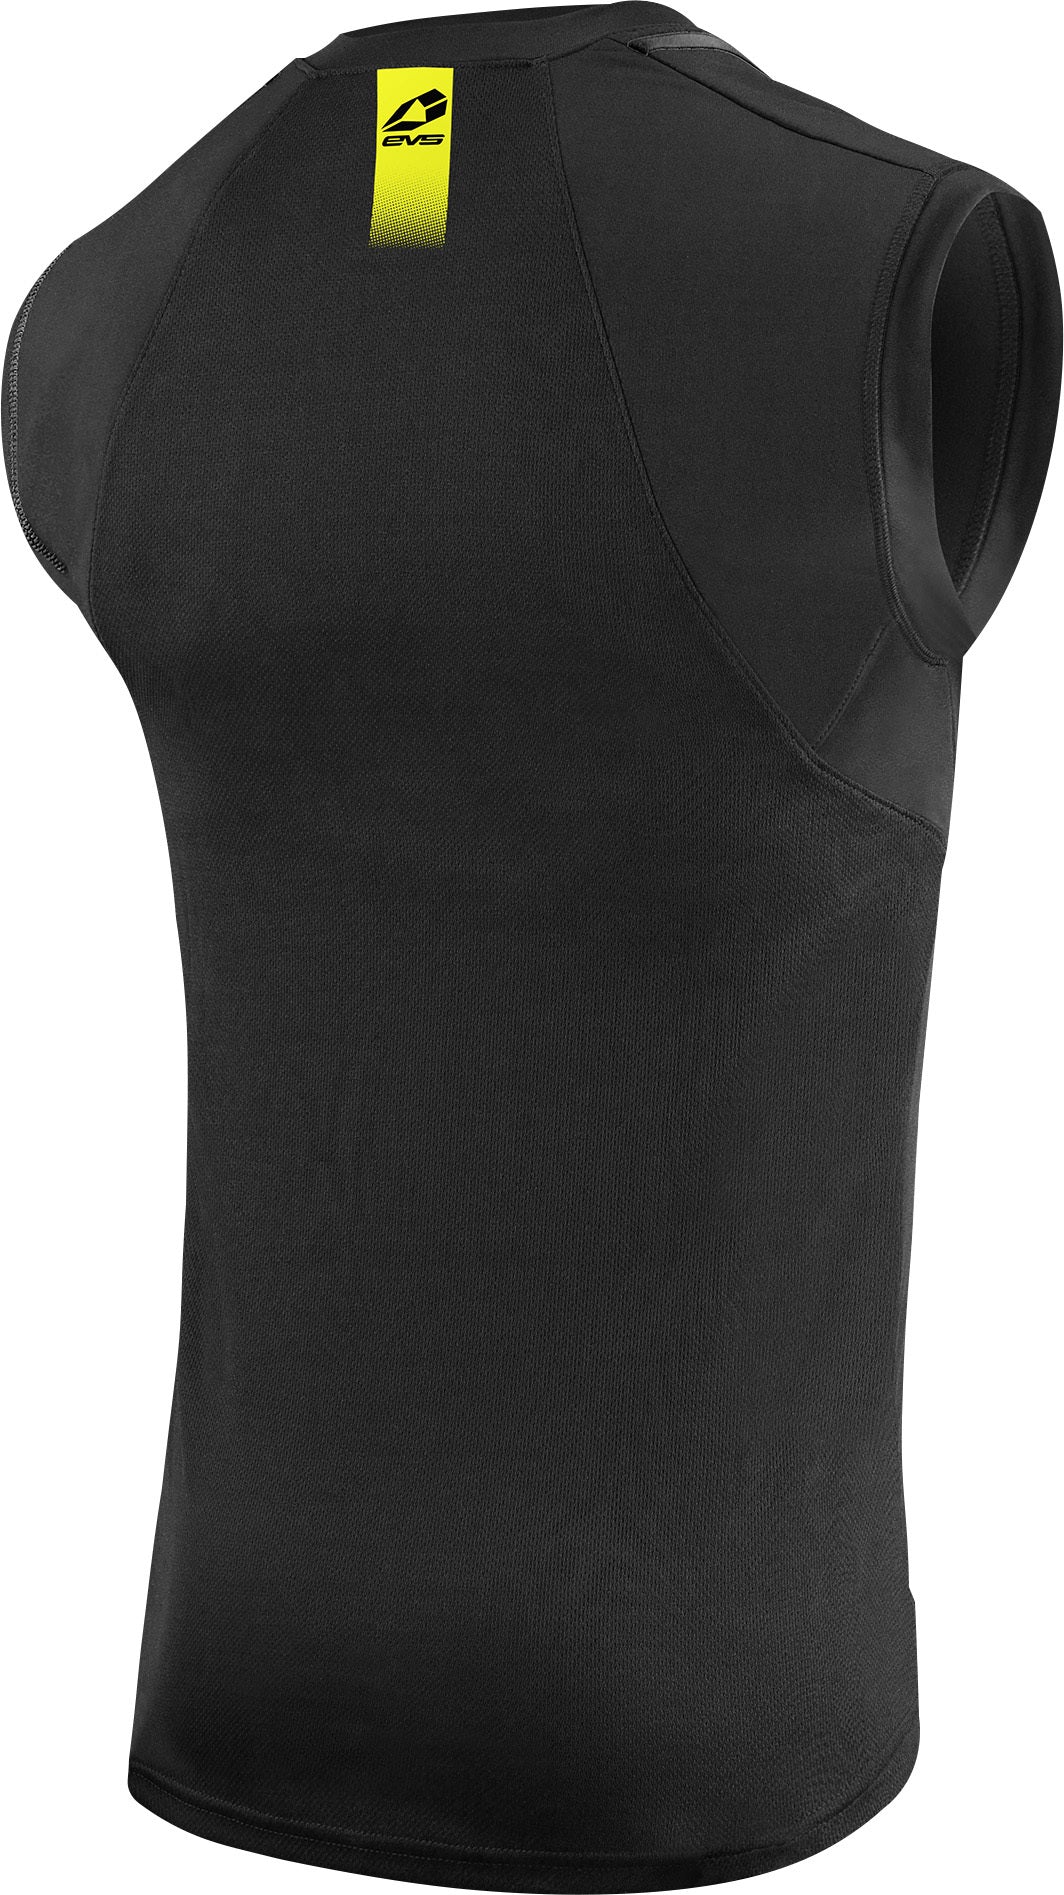 Sleeveless Tug Shirt Black Lg